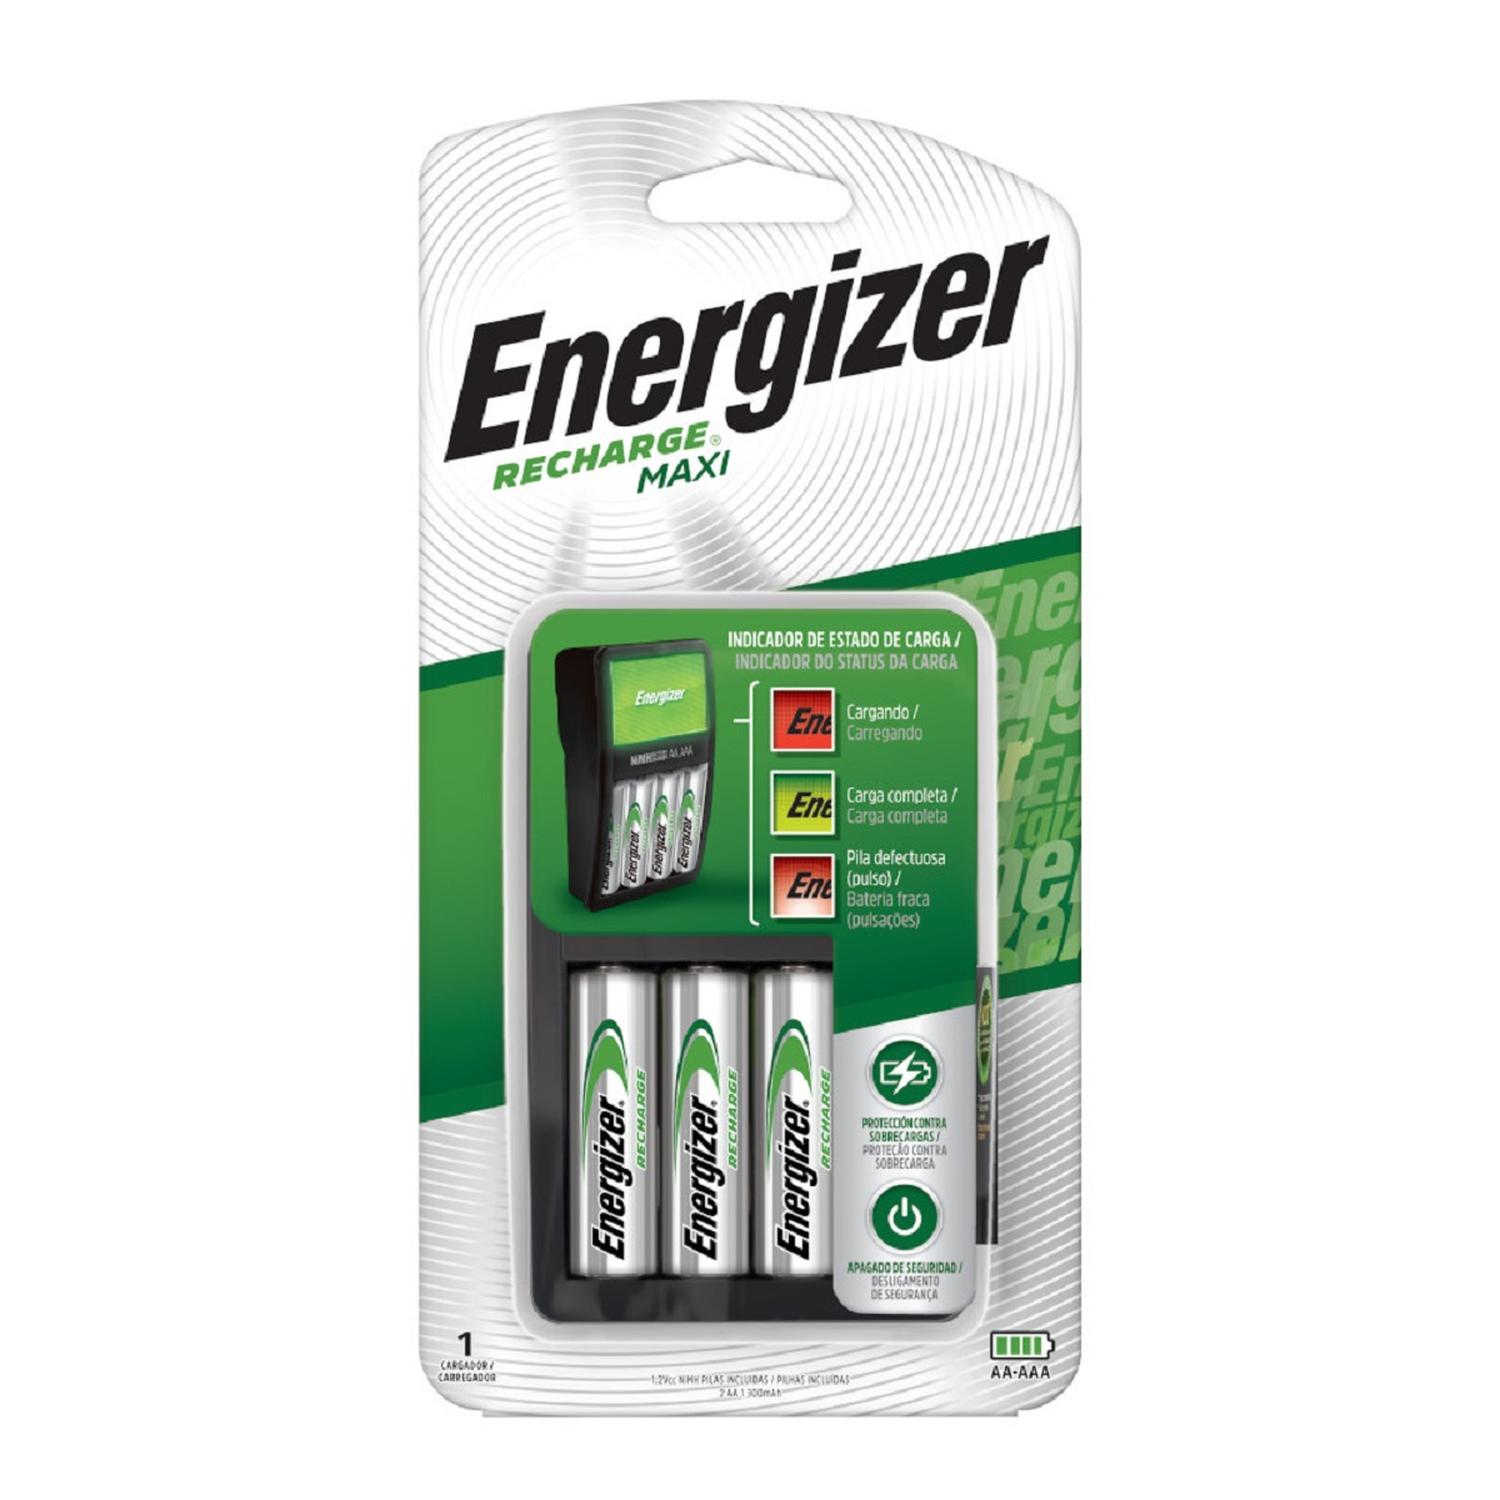 Cargador de Pilas MAXI Energizer + 6AA Energizer